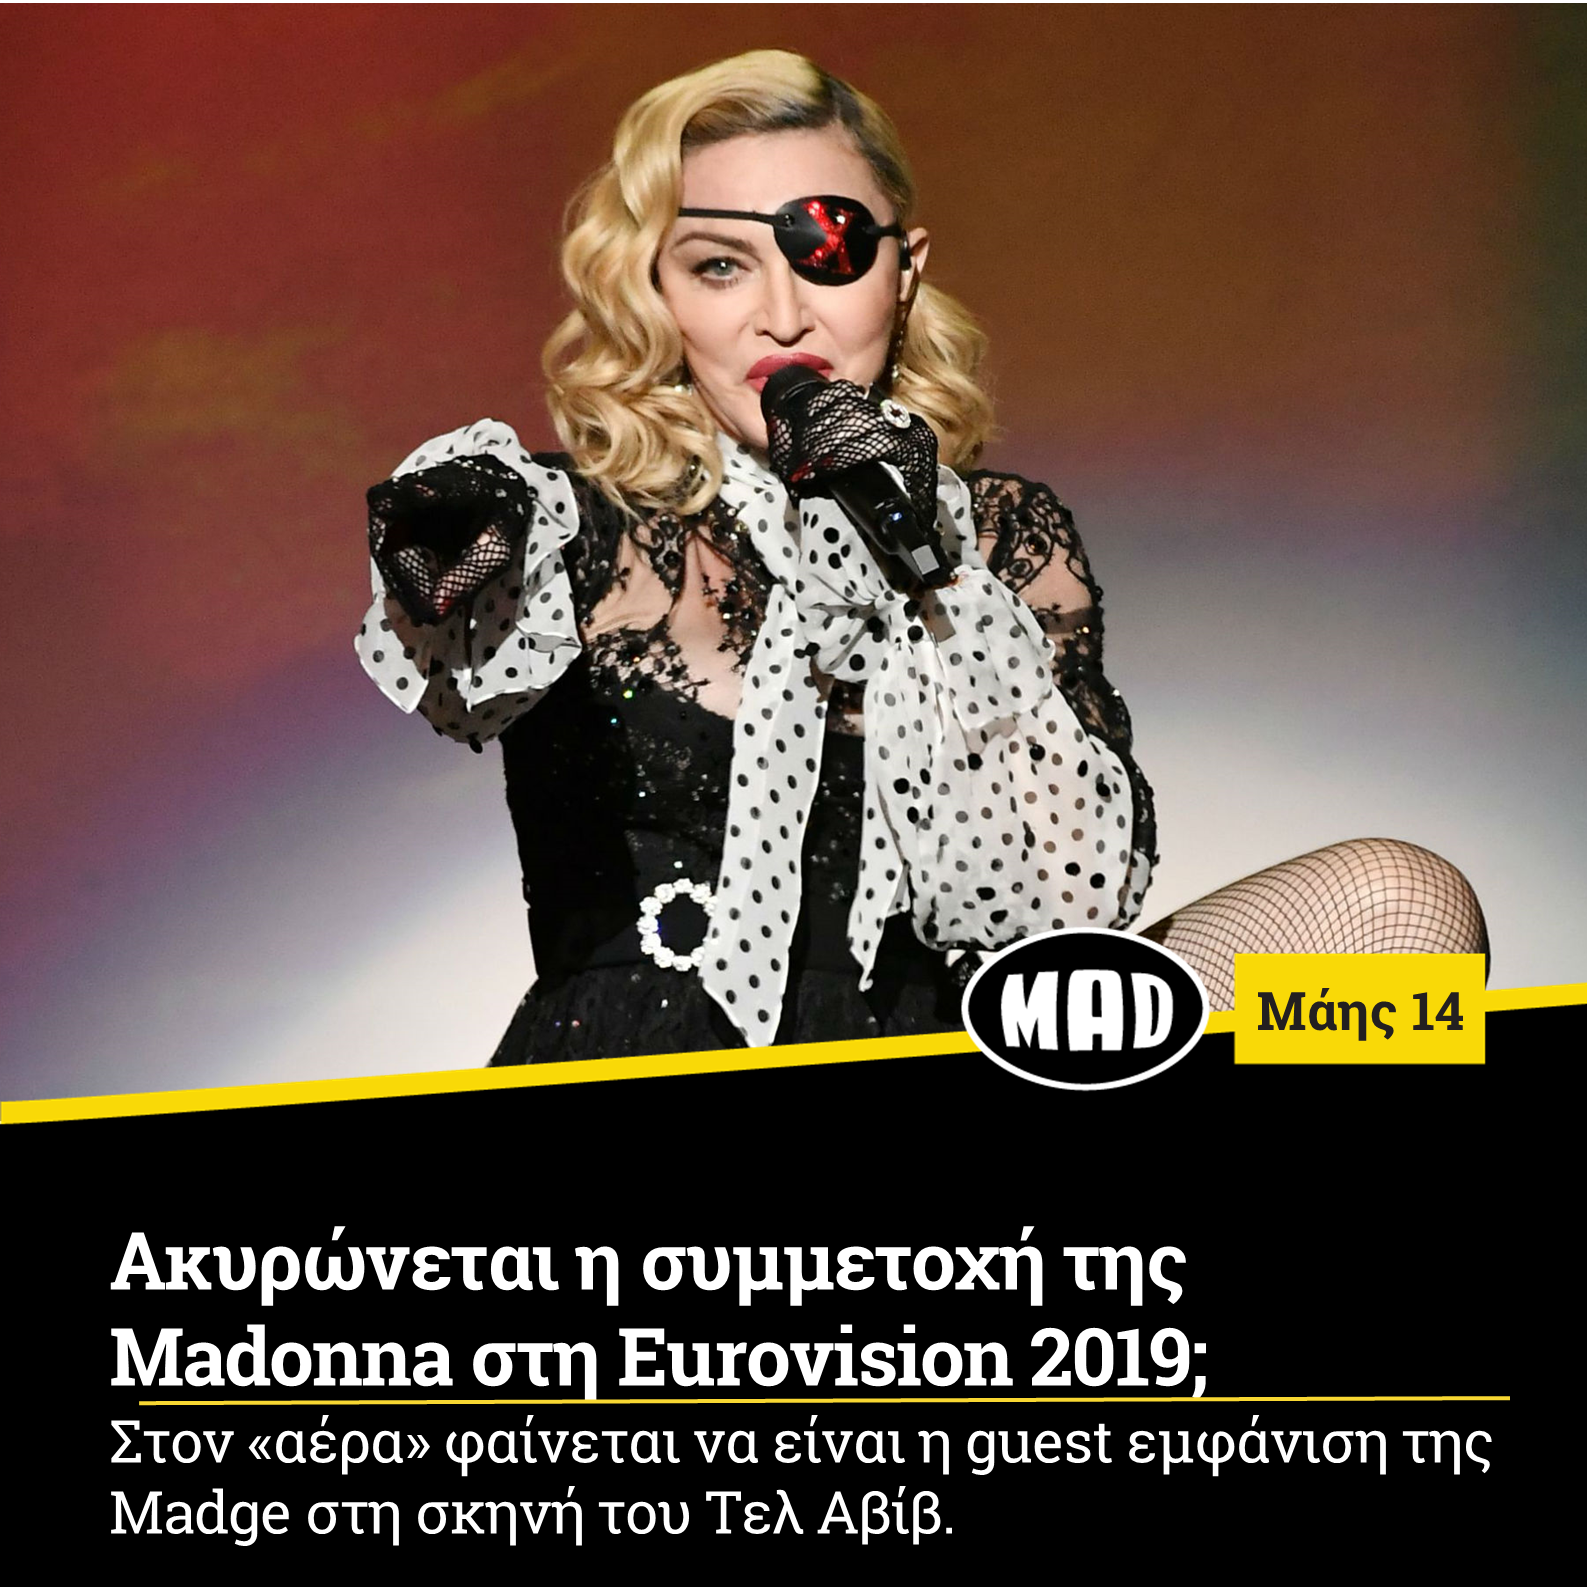 Ακυρώνεται η συμμετοχή της Madonna στη Eurovision 2019;